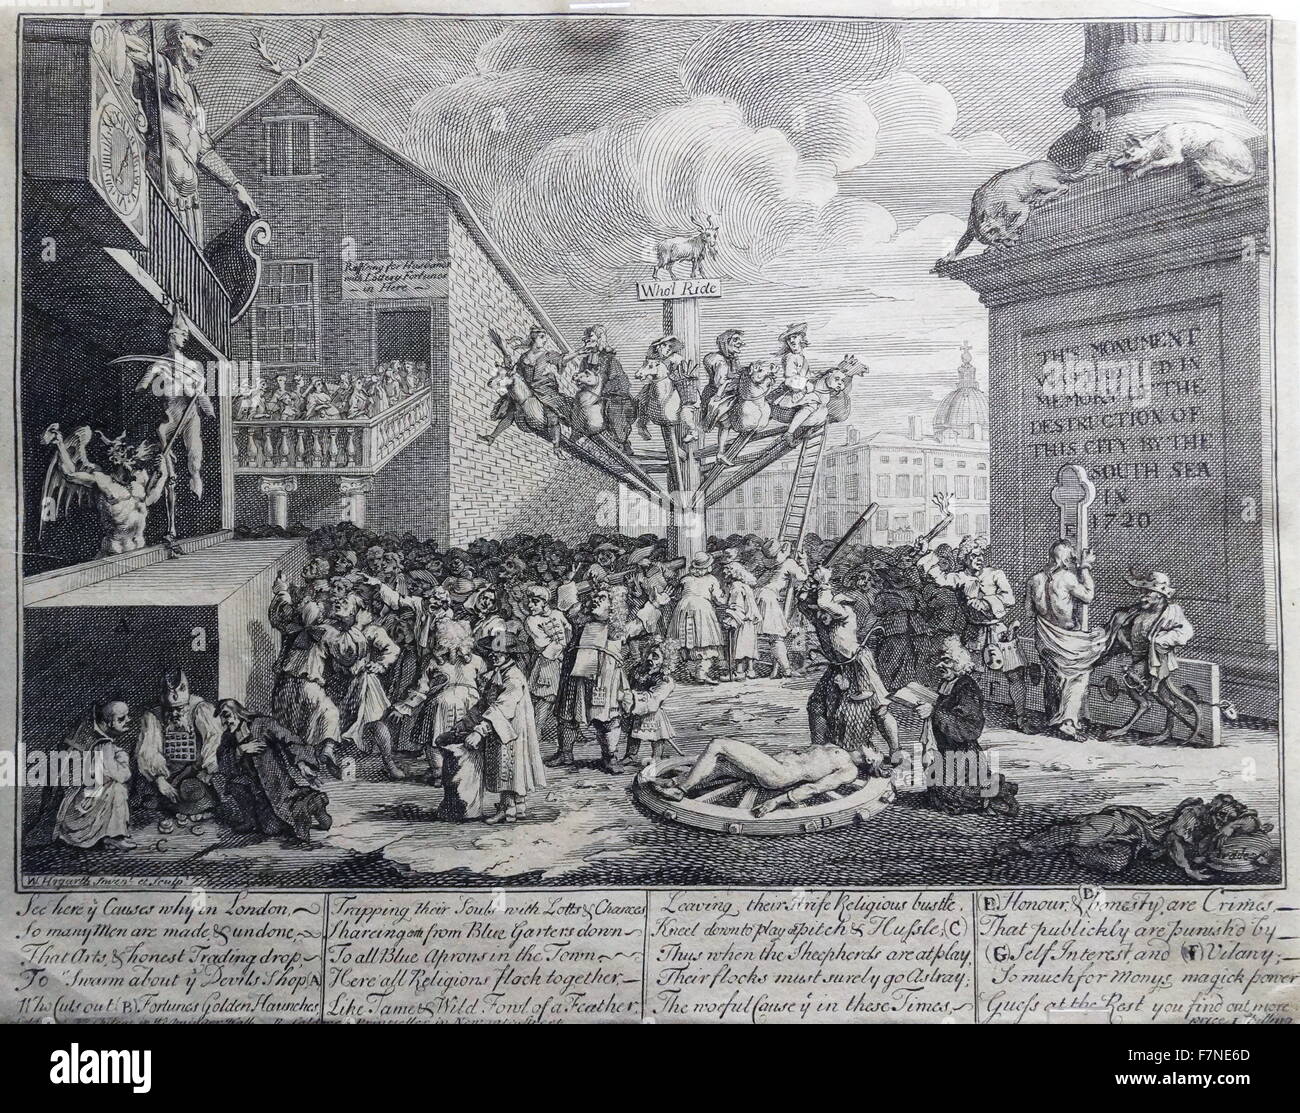 Illustrazione satirica raffigurante il Mare del Sud scheme Londra, 1721. In seguito al crollo del South Sea Company, gli effetti della società del crollo erano più sentita in Londra, perché era la casa per molti investitori che avevano acquistato quote del regime. Stampato da una incisione sulla lastra di rame realizzata da William Hogarth, 1721. Foto Stock